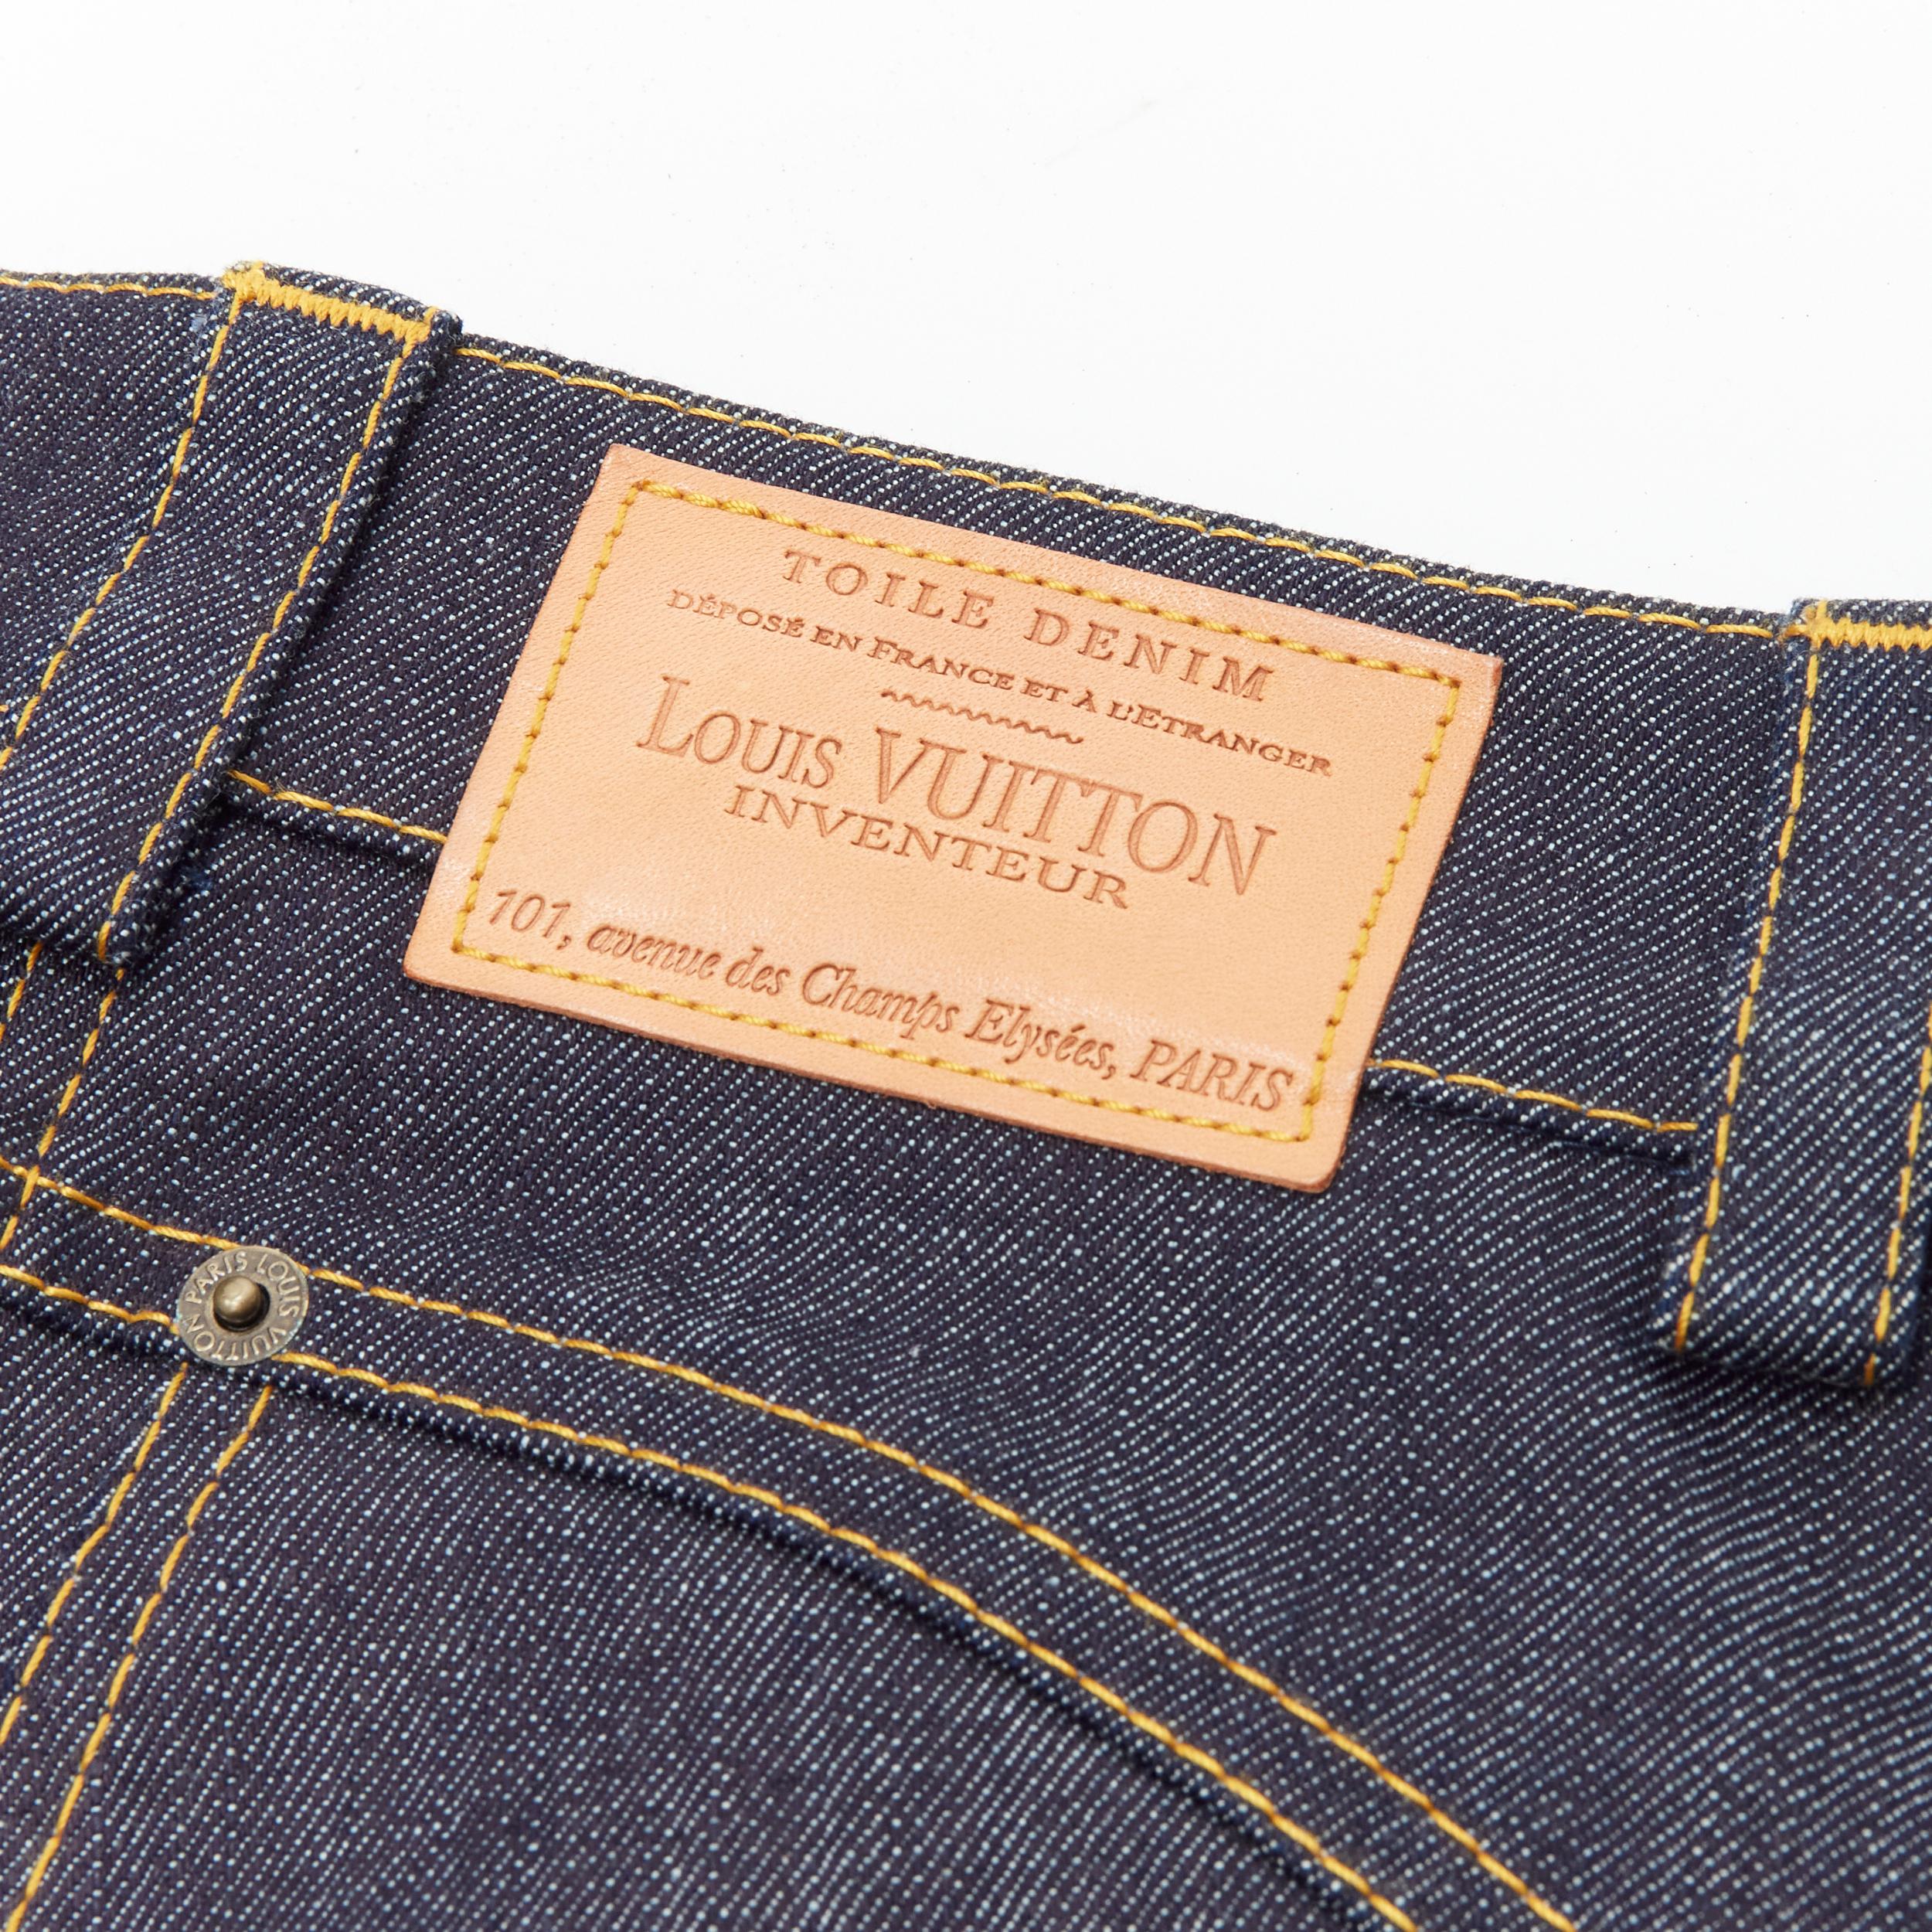 Women's LOUIS VUITTON dark indigo blue denim overstitch foldover pocket shorts FR34  XS